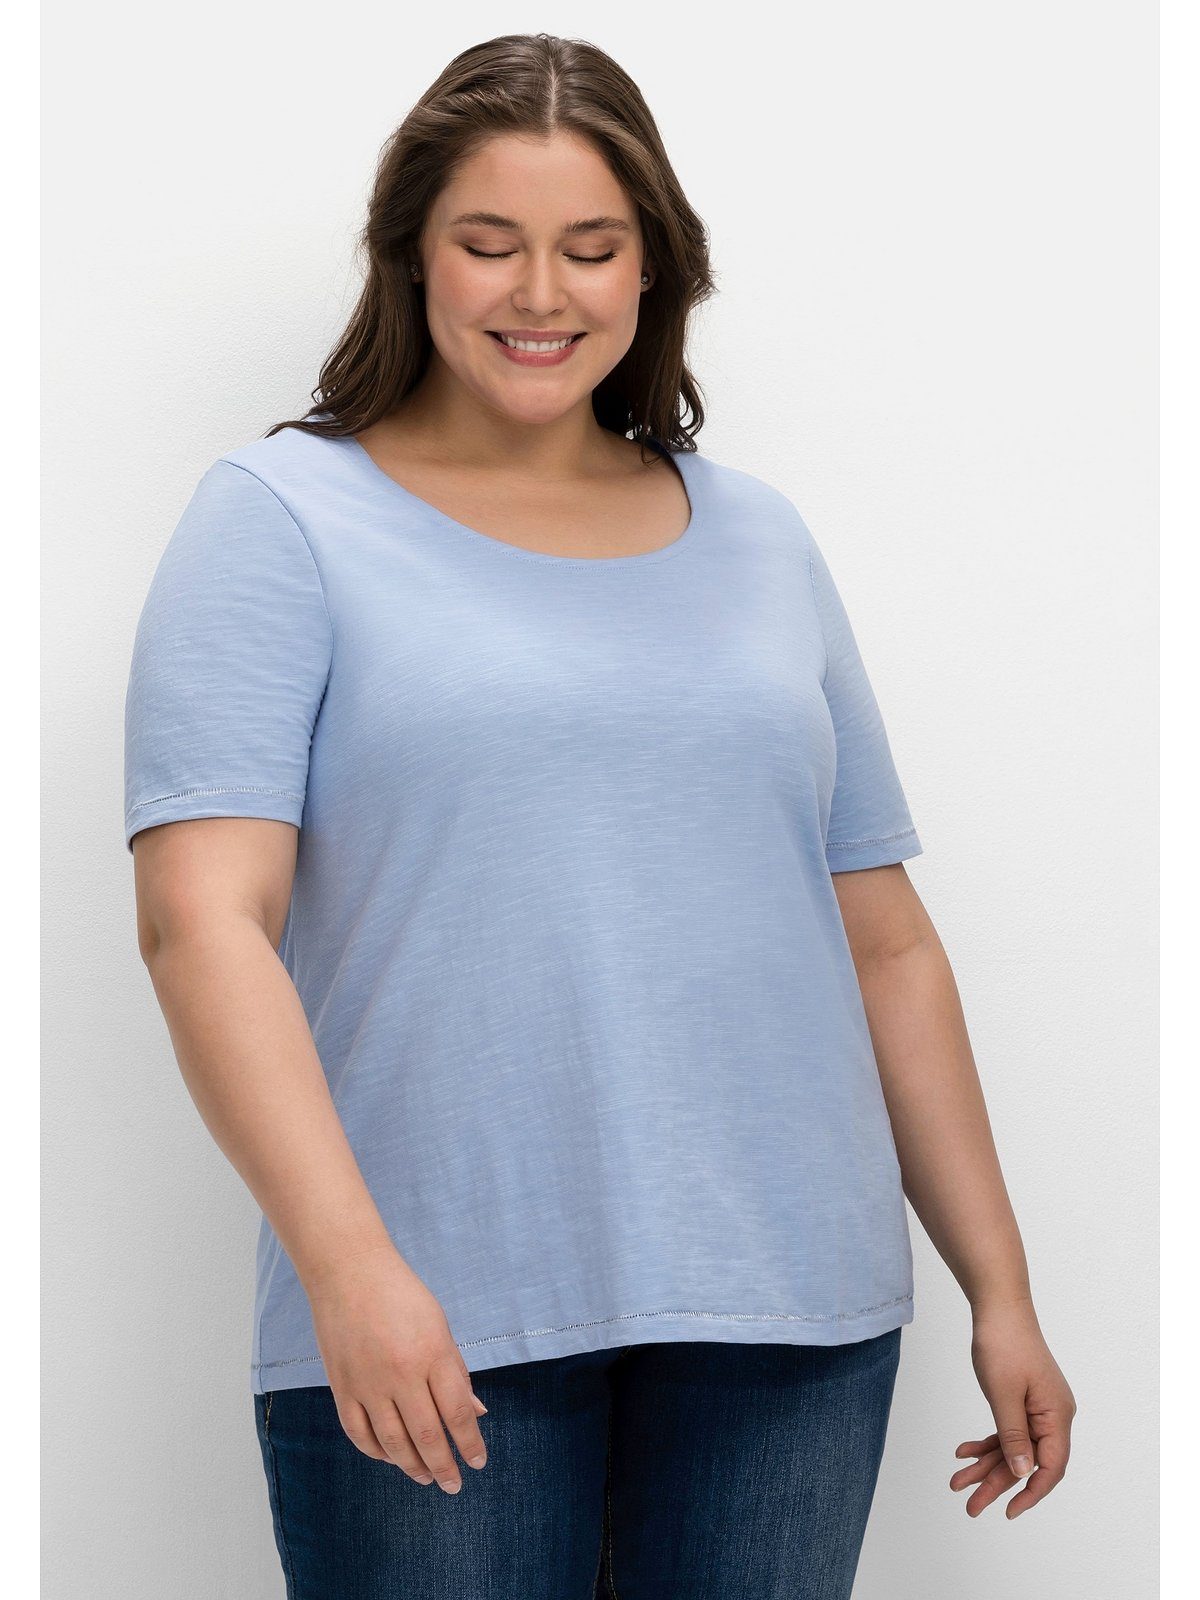 Sheego T-Shirt Große Größen mit Print der mittelblau hinten Schulter auf